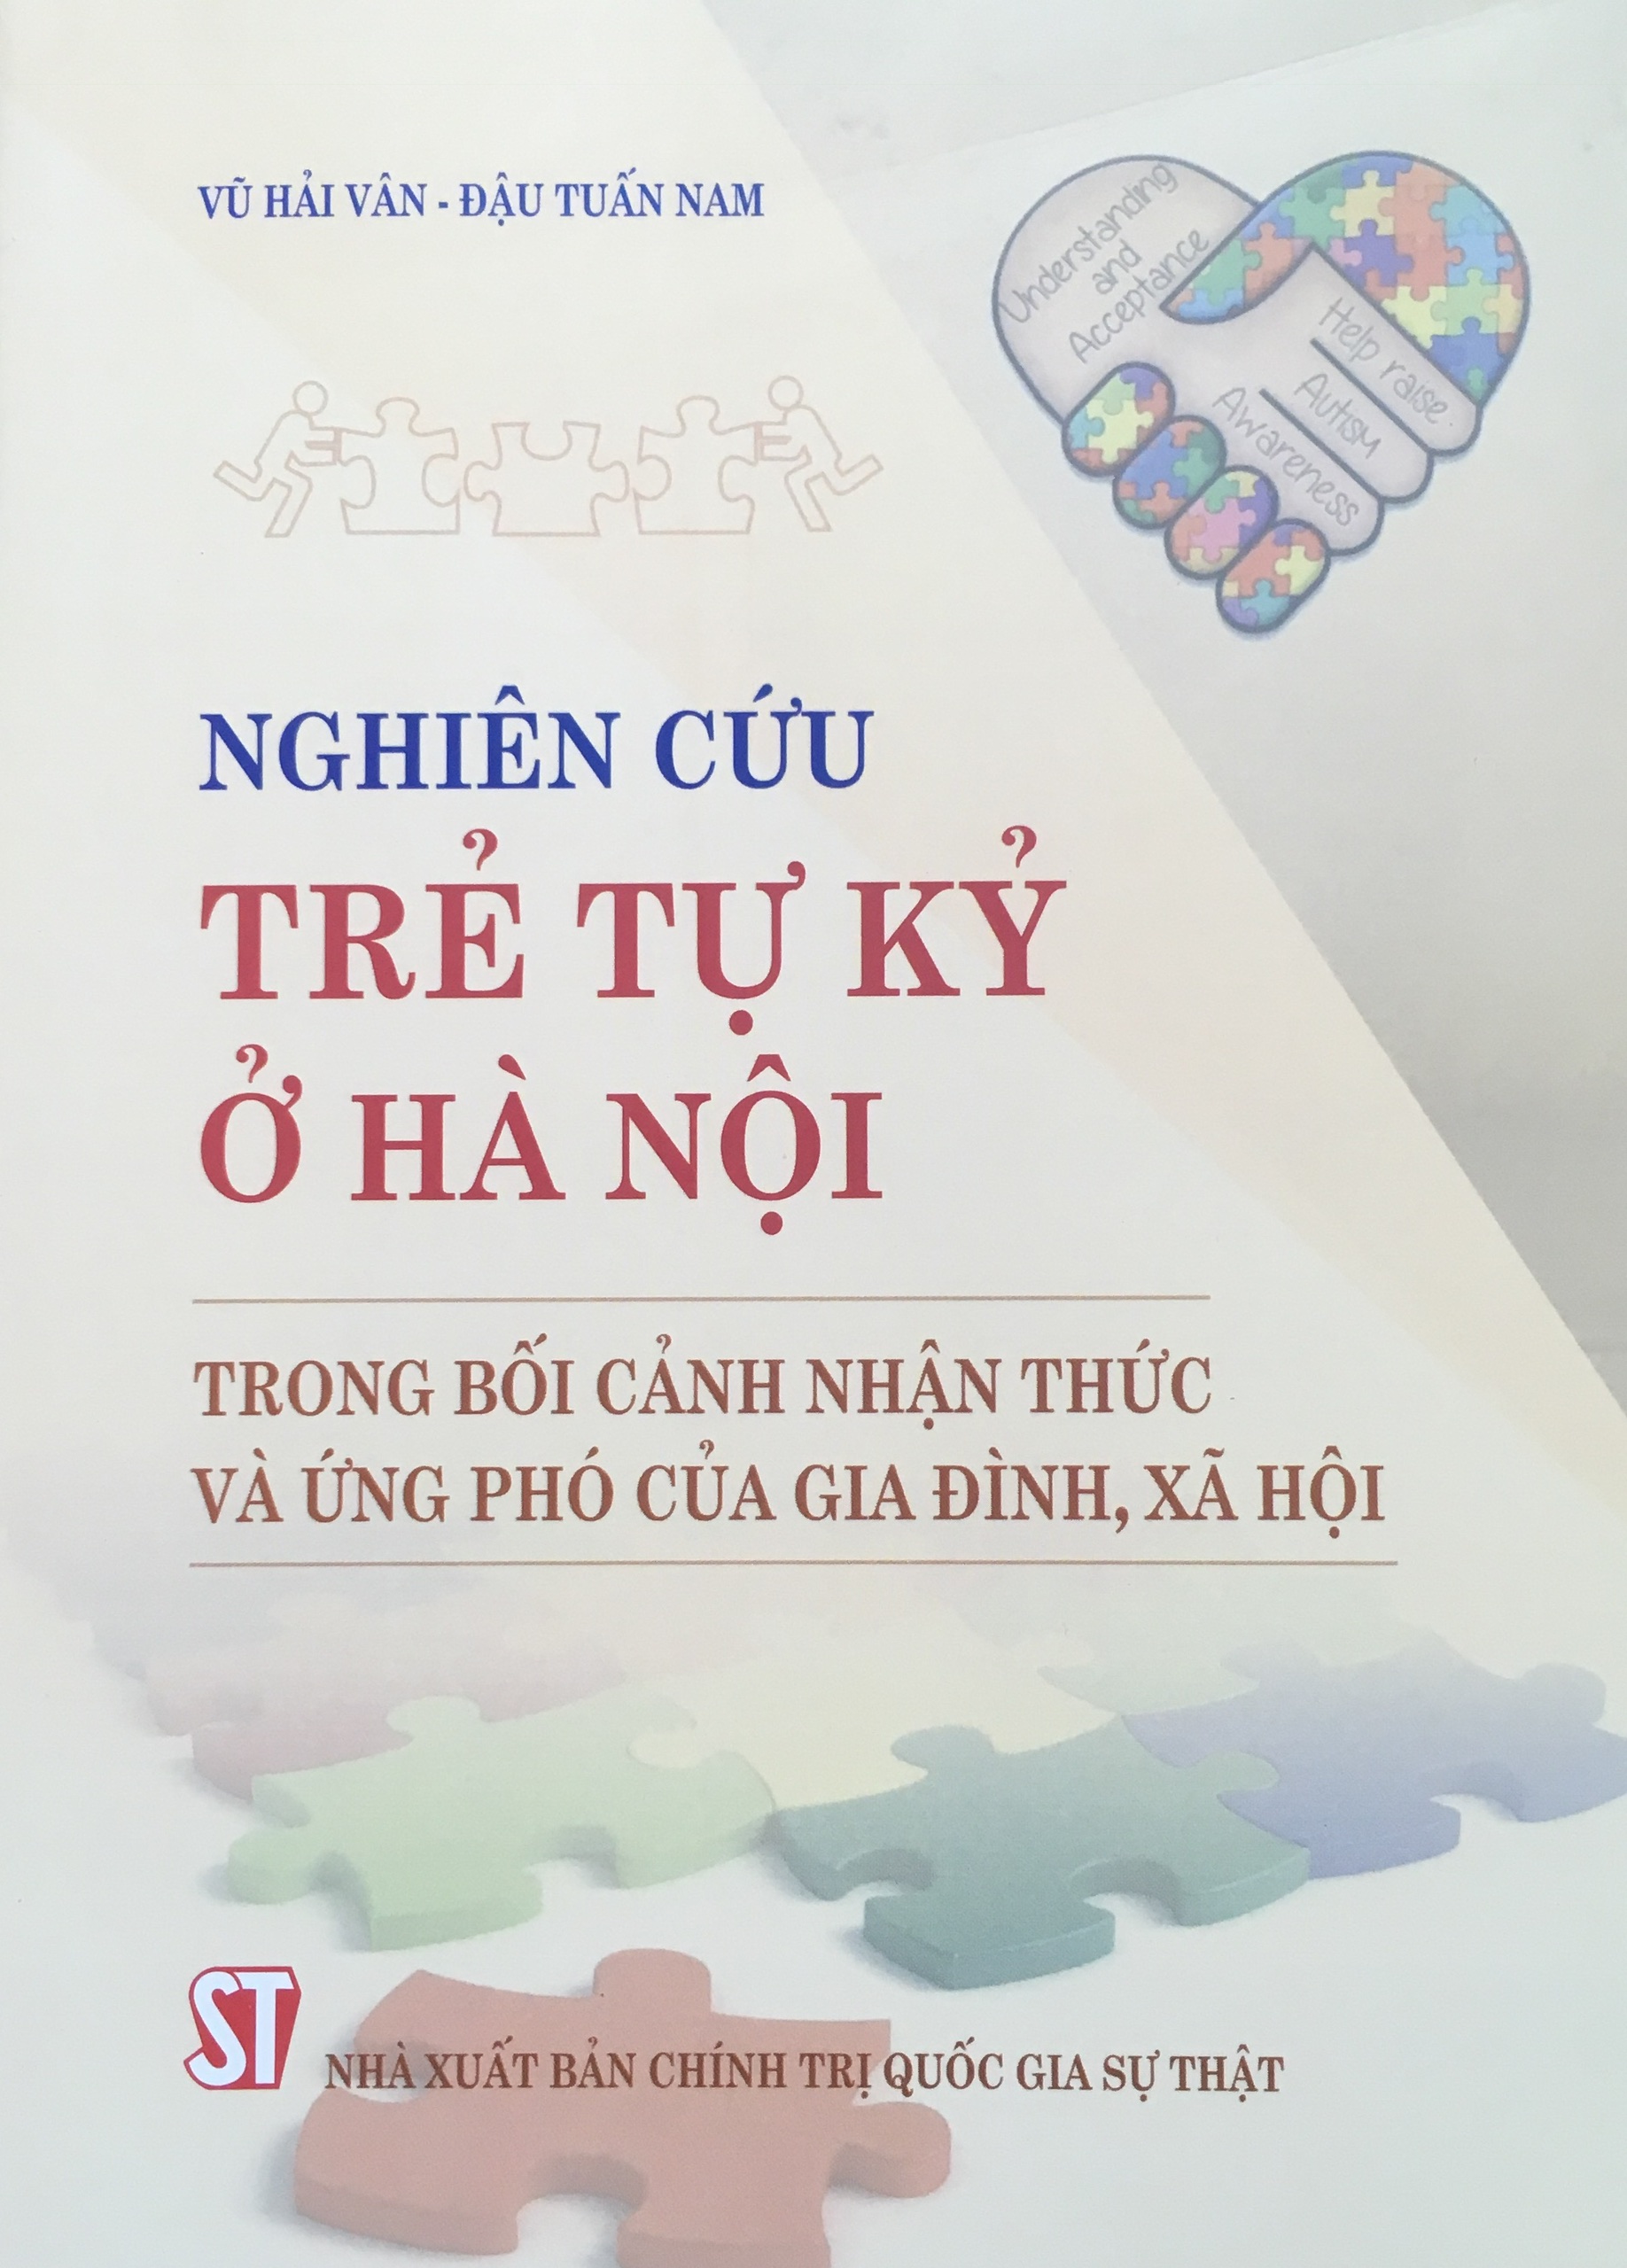 Nghiên cứu trẻ tự kỷ ở Hà Nội trong bối cảnh nhận thức và ứng phó của gia đình, xã hội